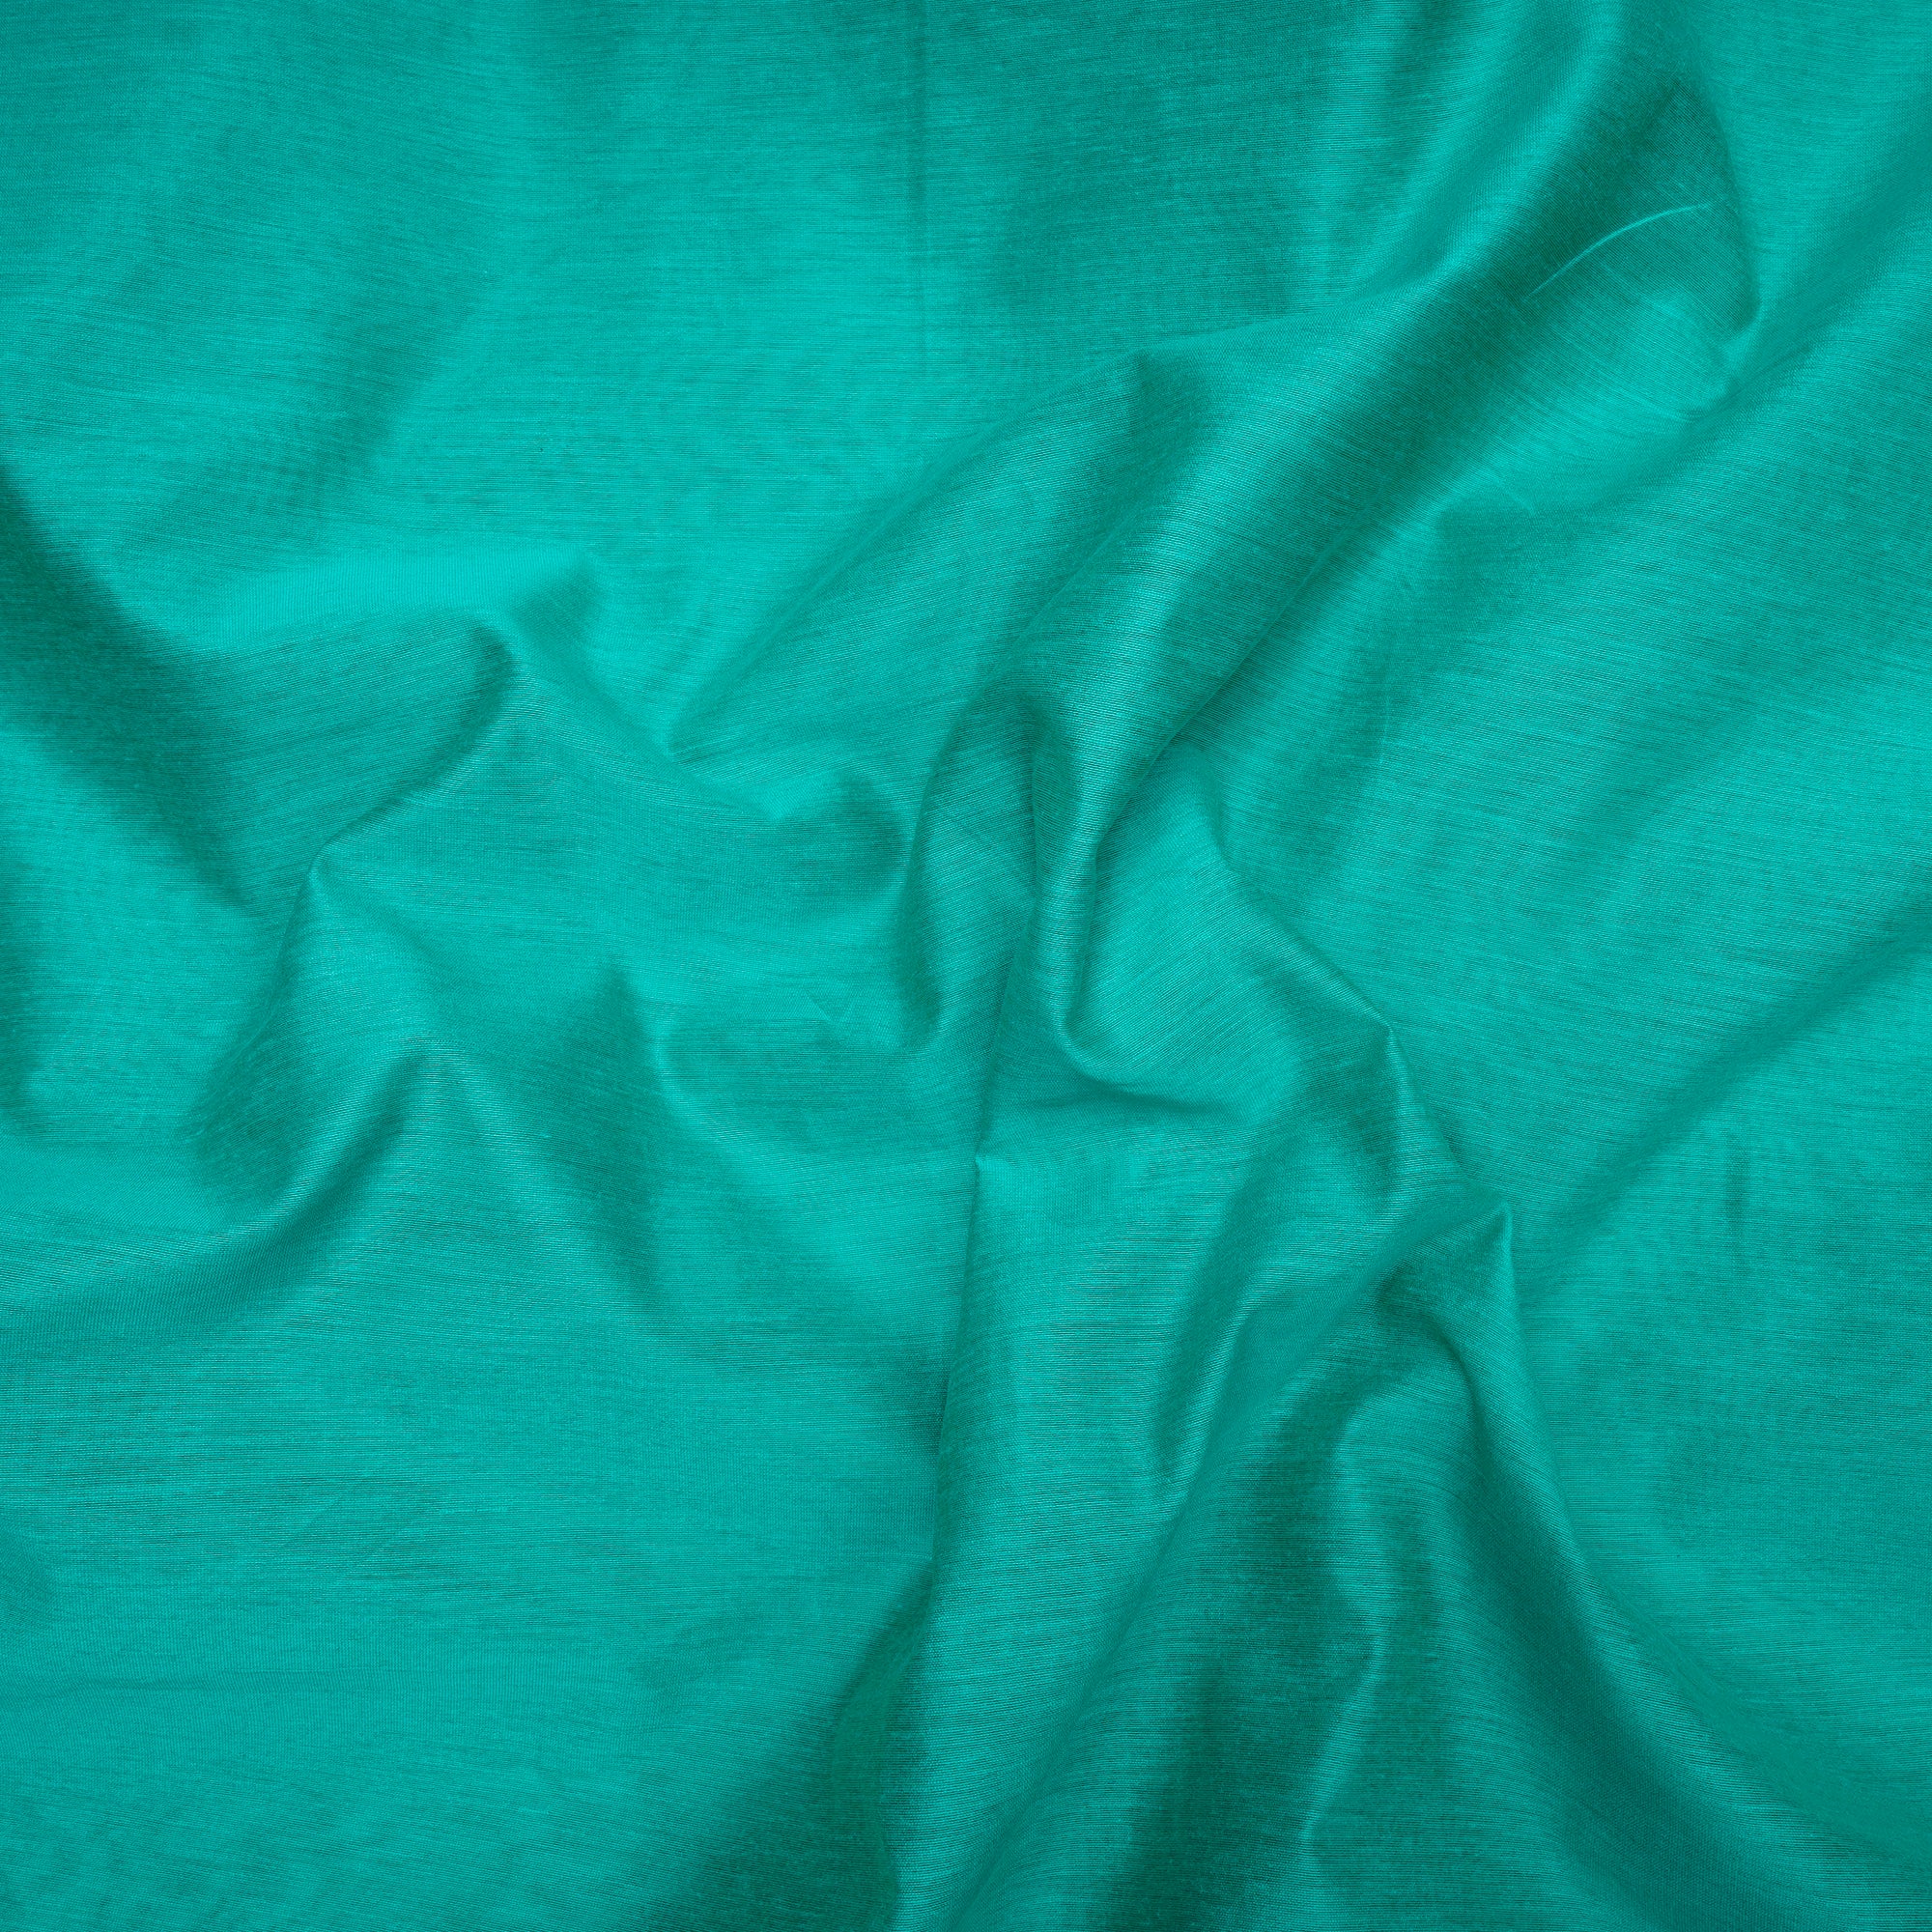 Persian Green Color Polyester Mono Chanderi Fabric with Zari Border